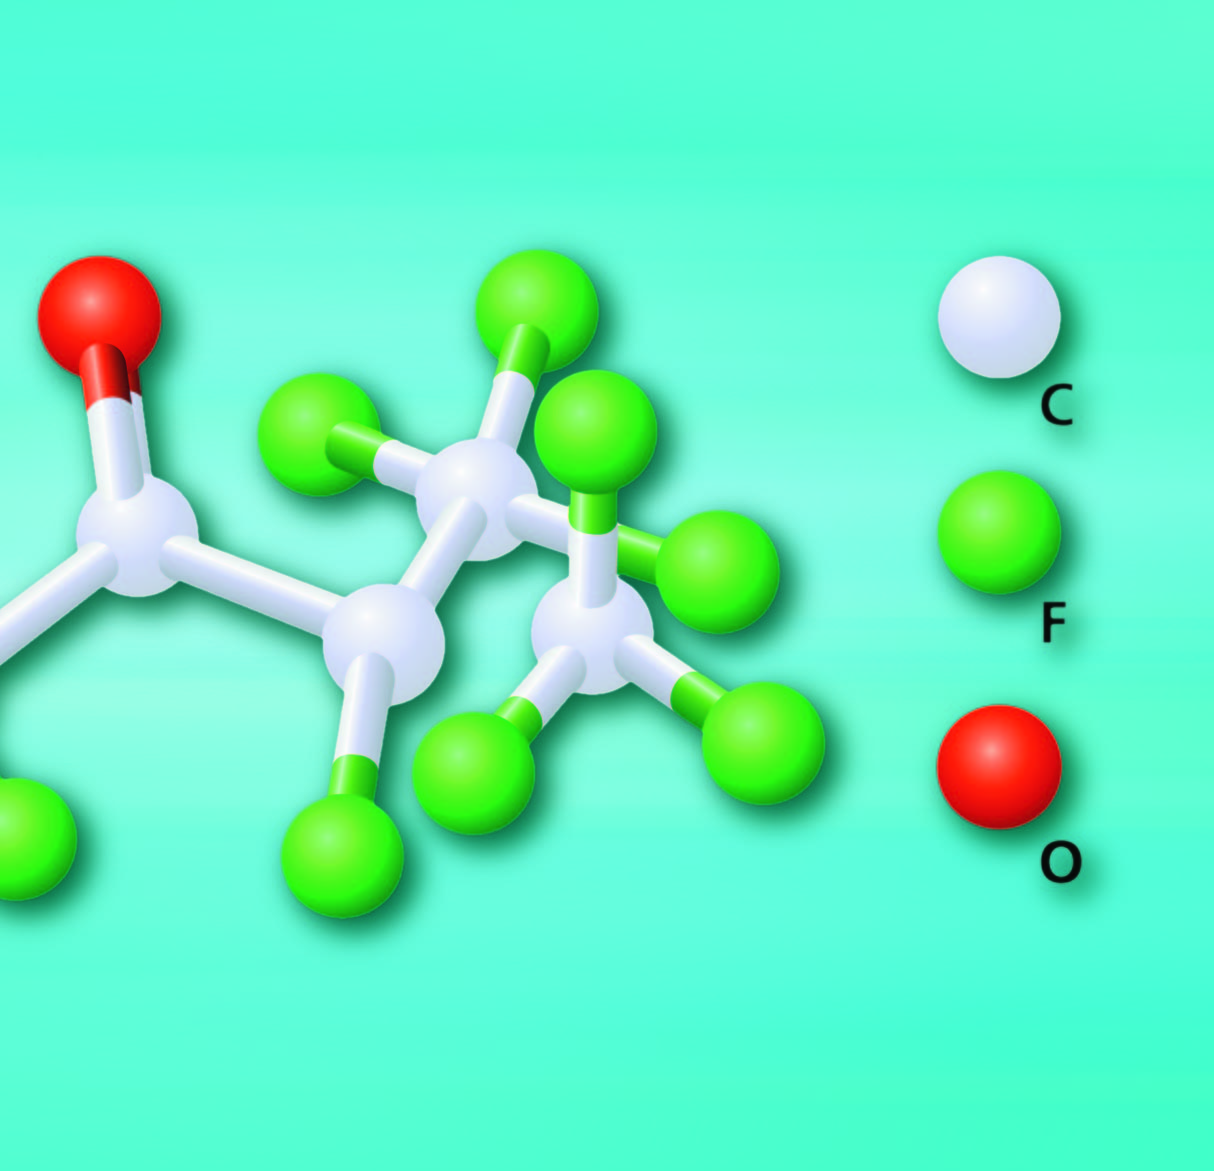 123 [CF 3CF 2C(O)CF(CF 3) 2] abzulesen ist, handelt es sich um ein langkettiges Molekül, welches mit einem Molekulargewicht von 316,4 das schwerste der bisher eingesetzten Löschgase ist.